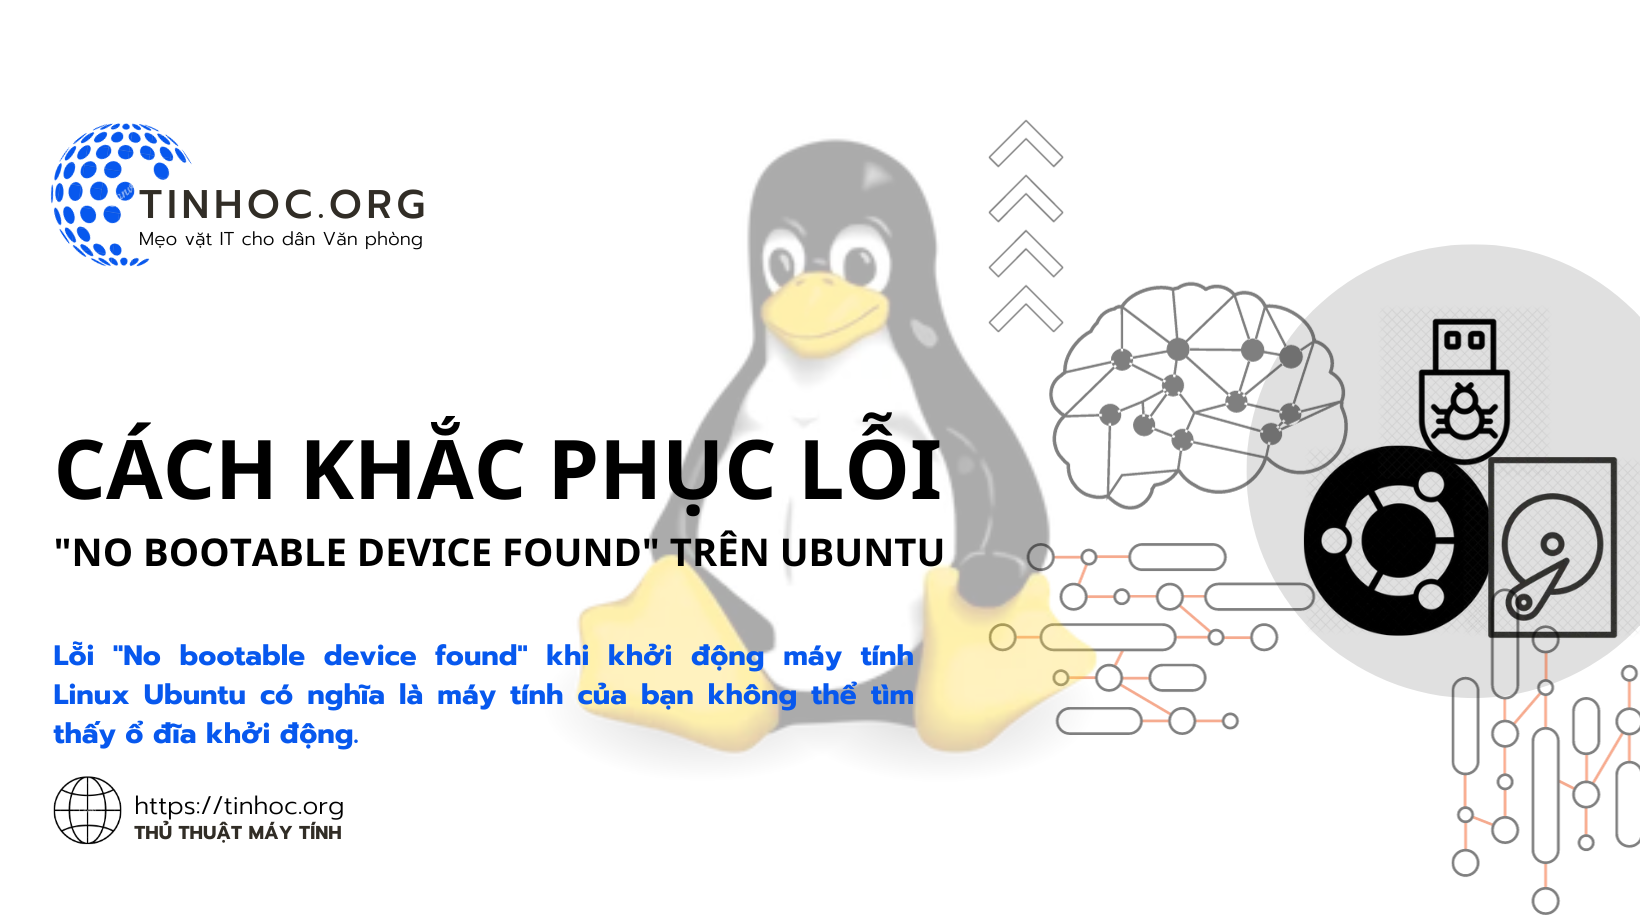 Lỗi "No bootable device found" khi khởi động máy tính Linux Ubuntu có nghĩa là máy tính của bạn không thể tìm thấy ổ đĩa khởi động.